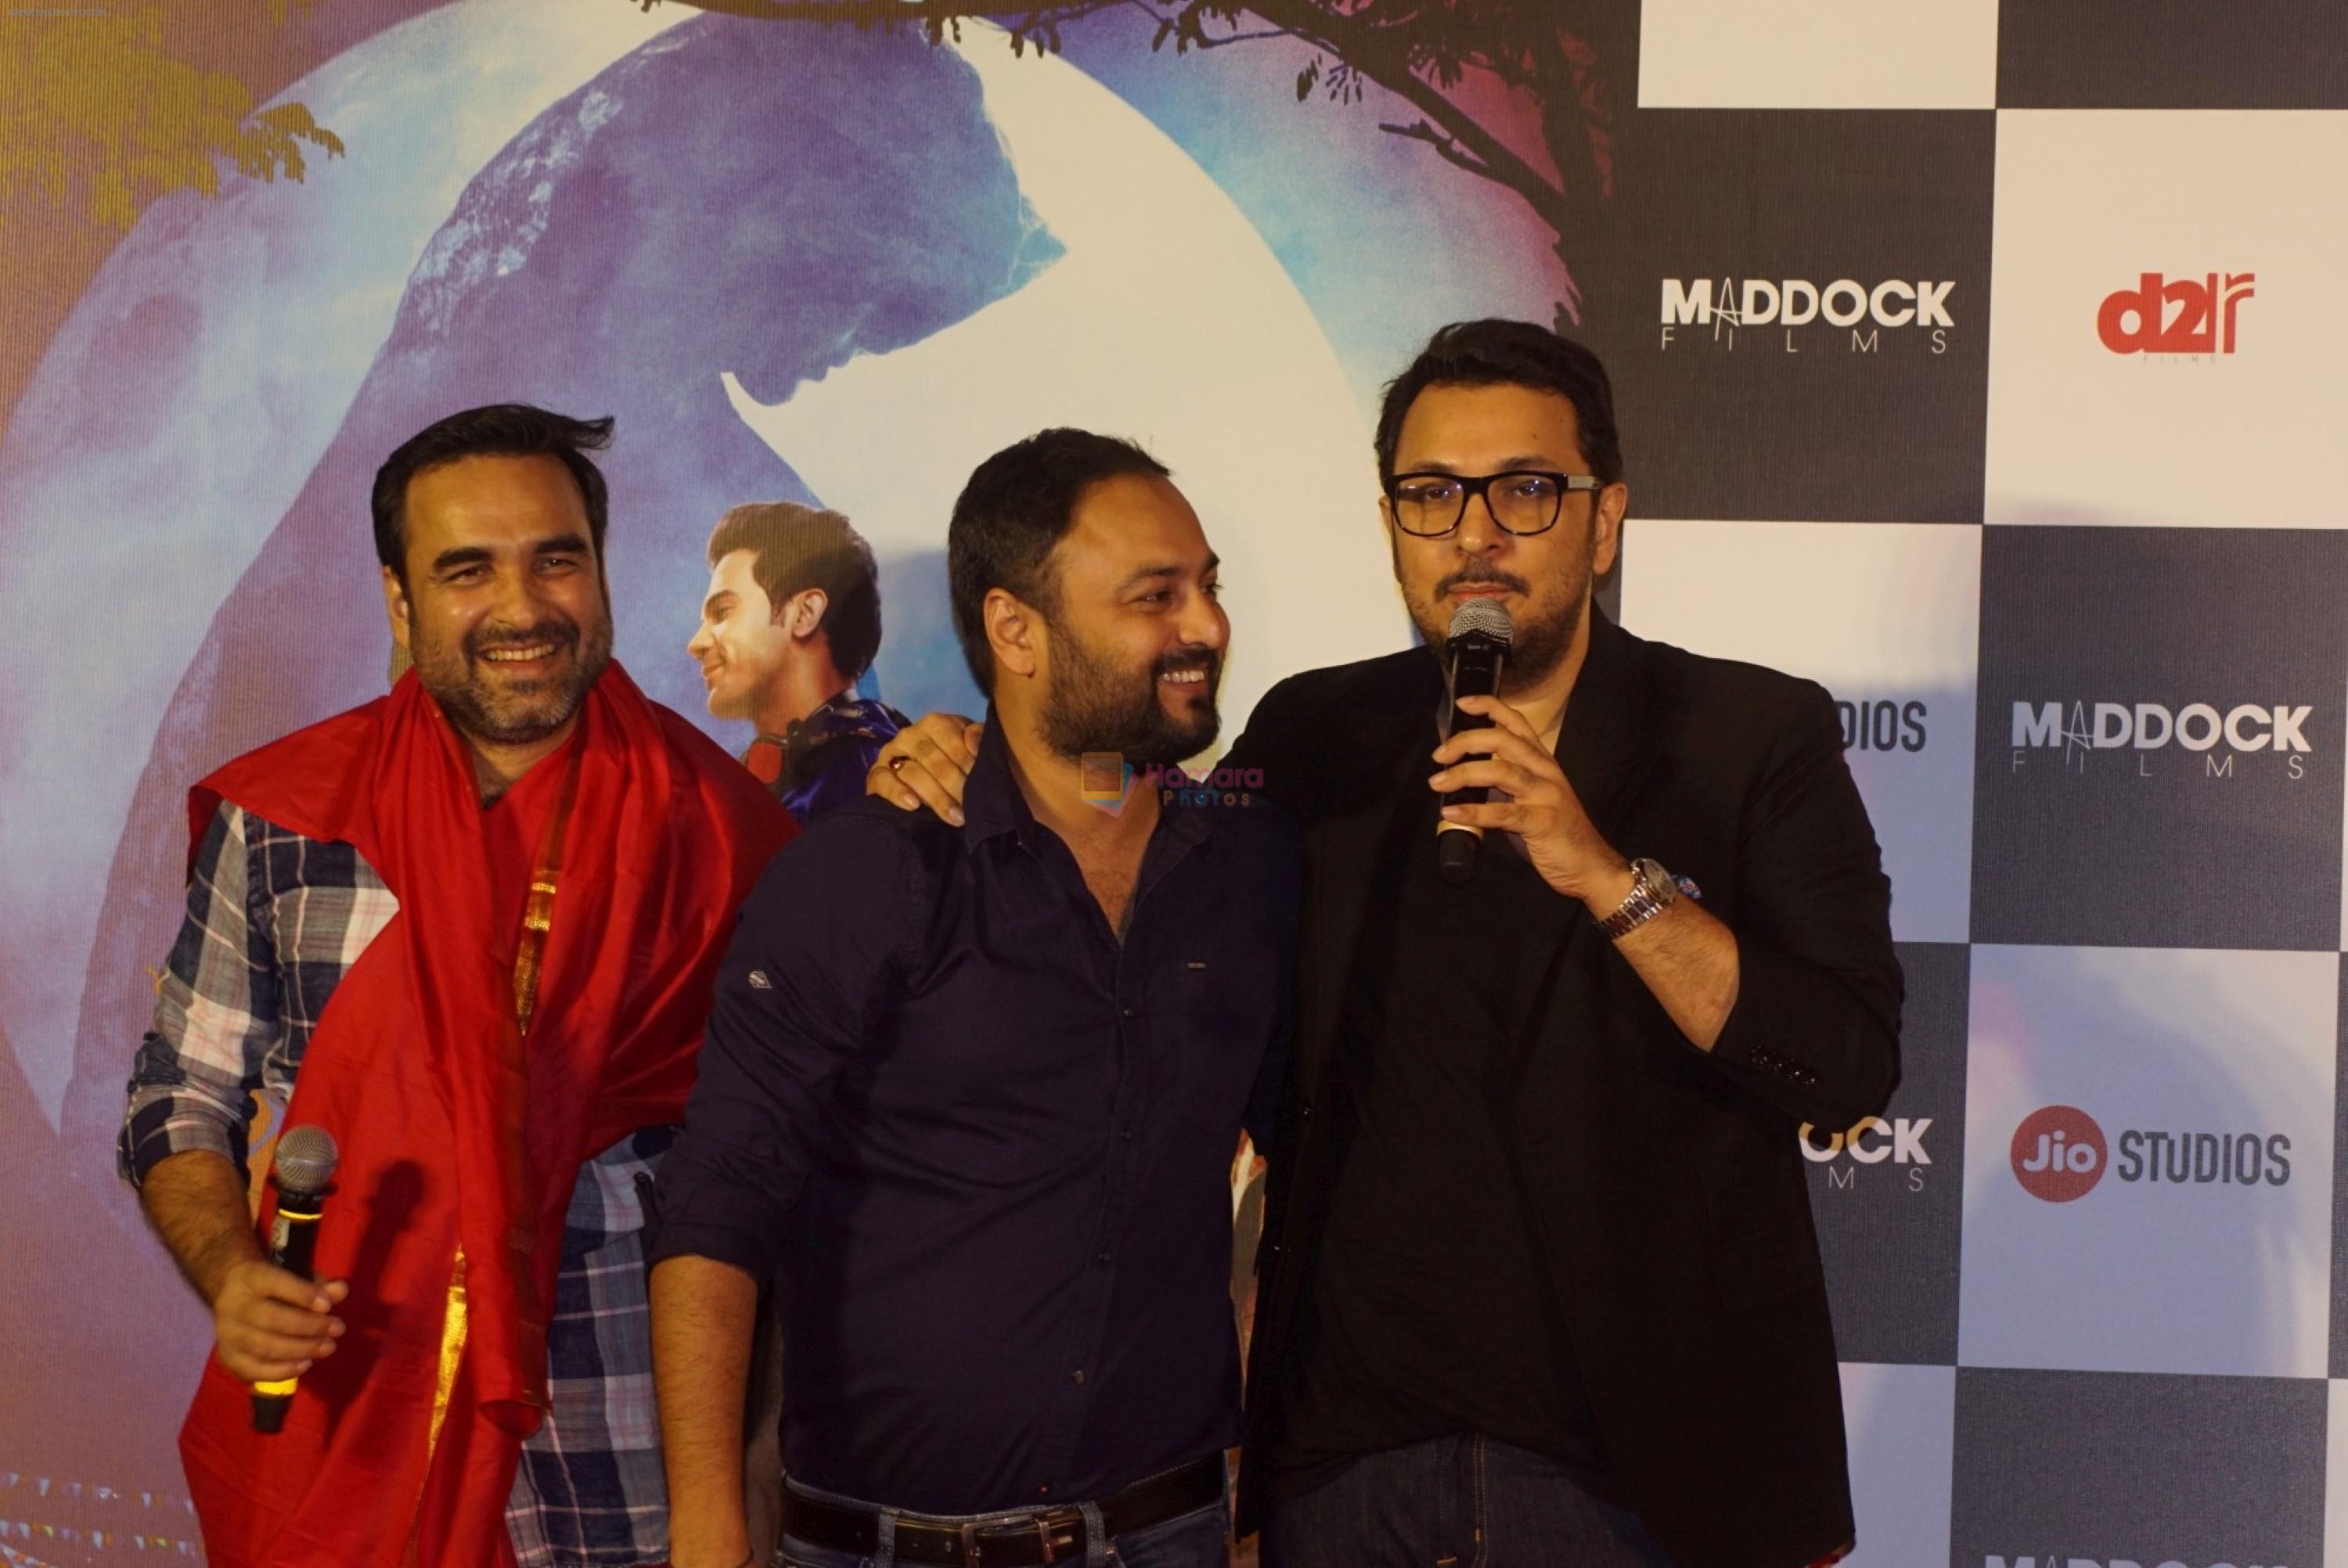 Pankaj Tripathi, Dinesh Vijan, Amar Kaushik at the Trailer Launch of Film Stree on 26th July 2018